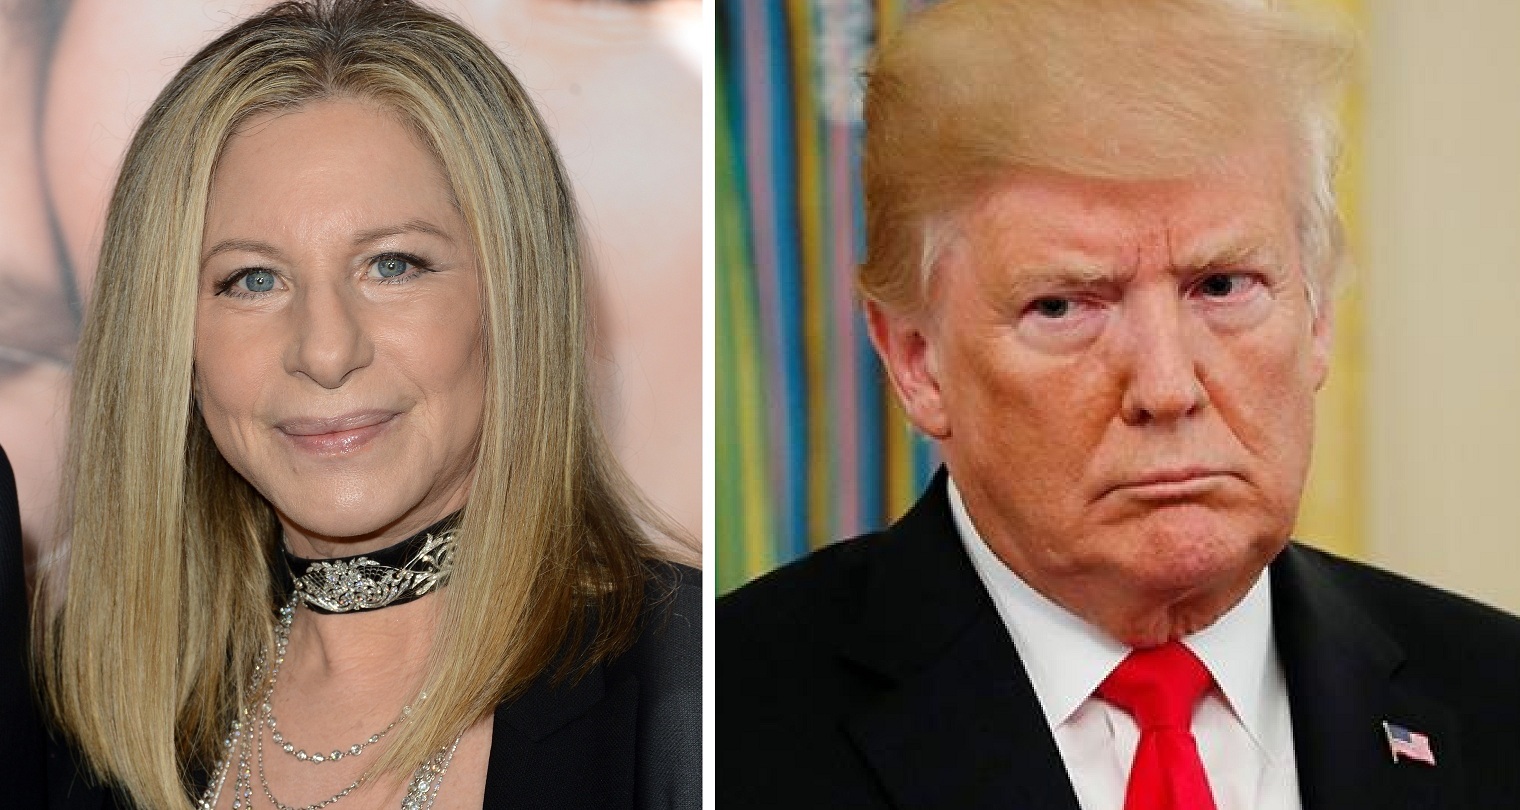 Barbra Streisand Disses Trump in her New Song. Listen Here!